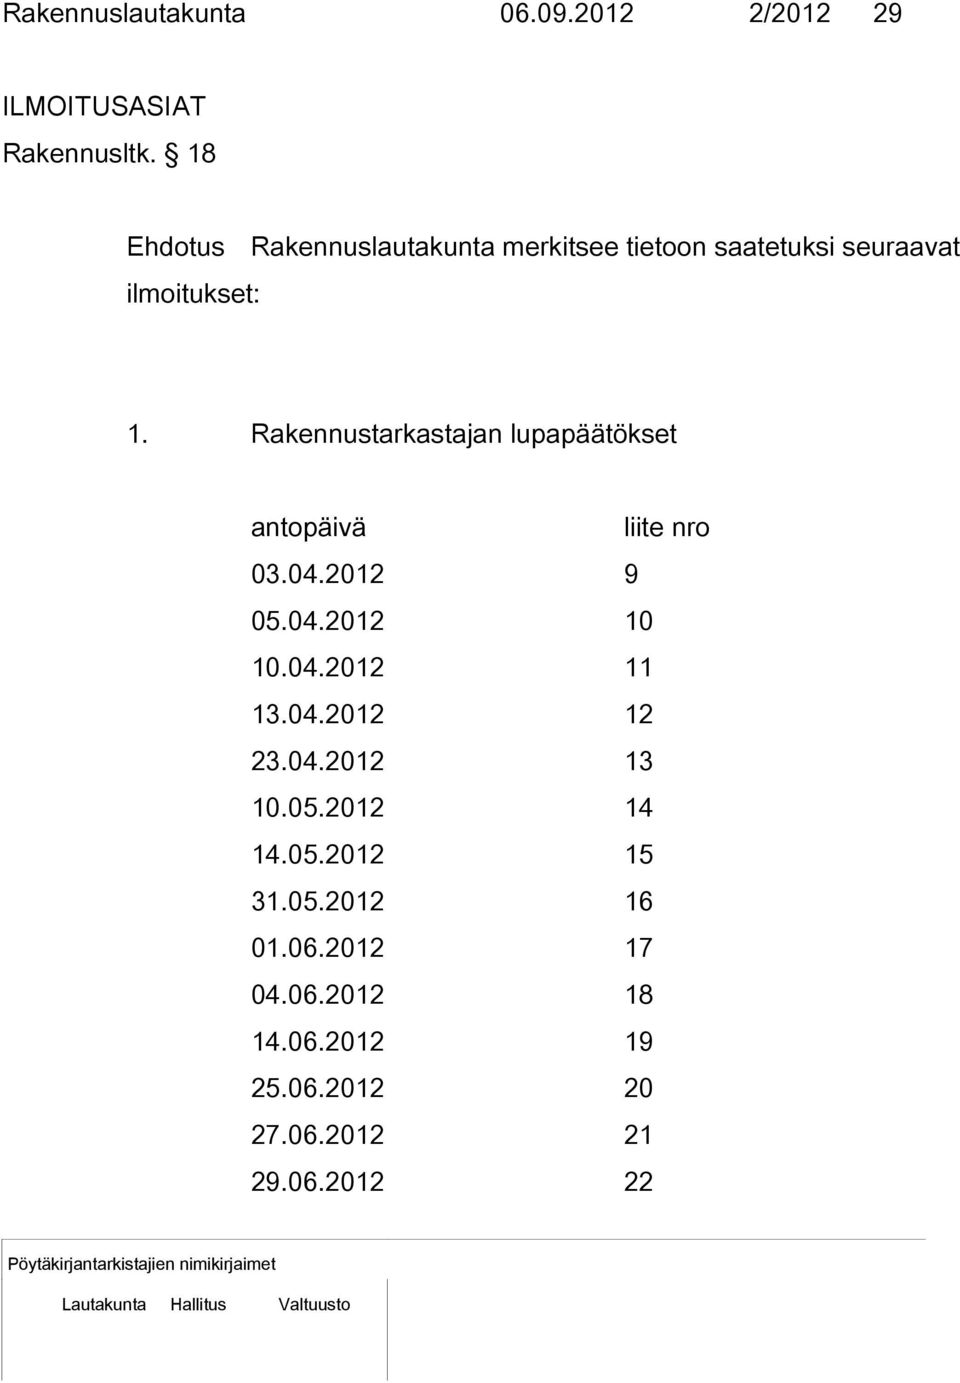 Rakennustarkastajan lupapäätökset antopäivä liite nro 03.04.2012 9 05.04.2012 10 10.04.2012 11 13.